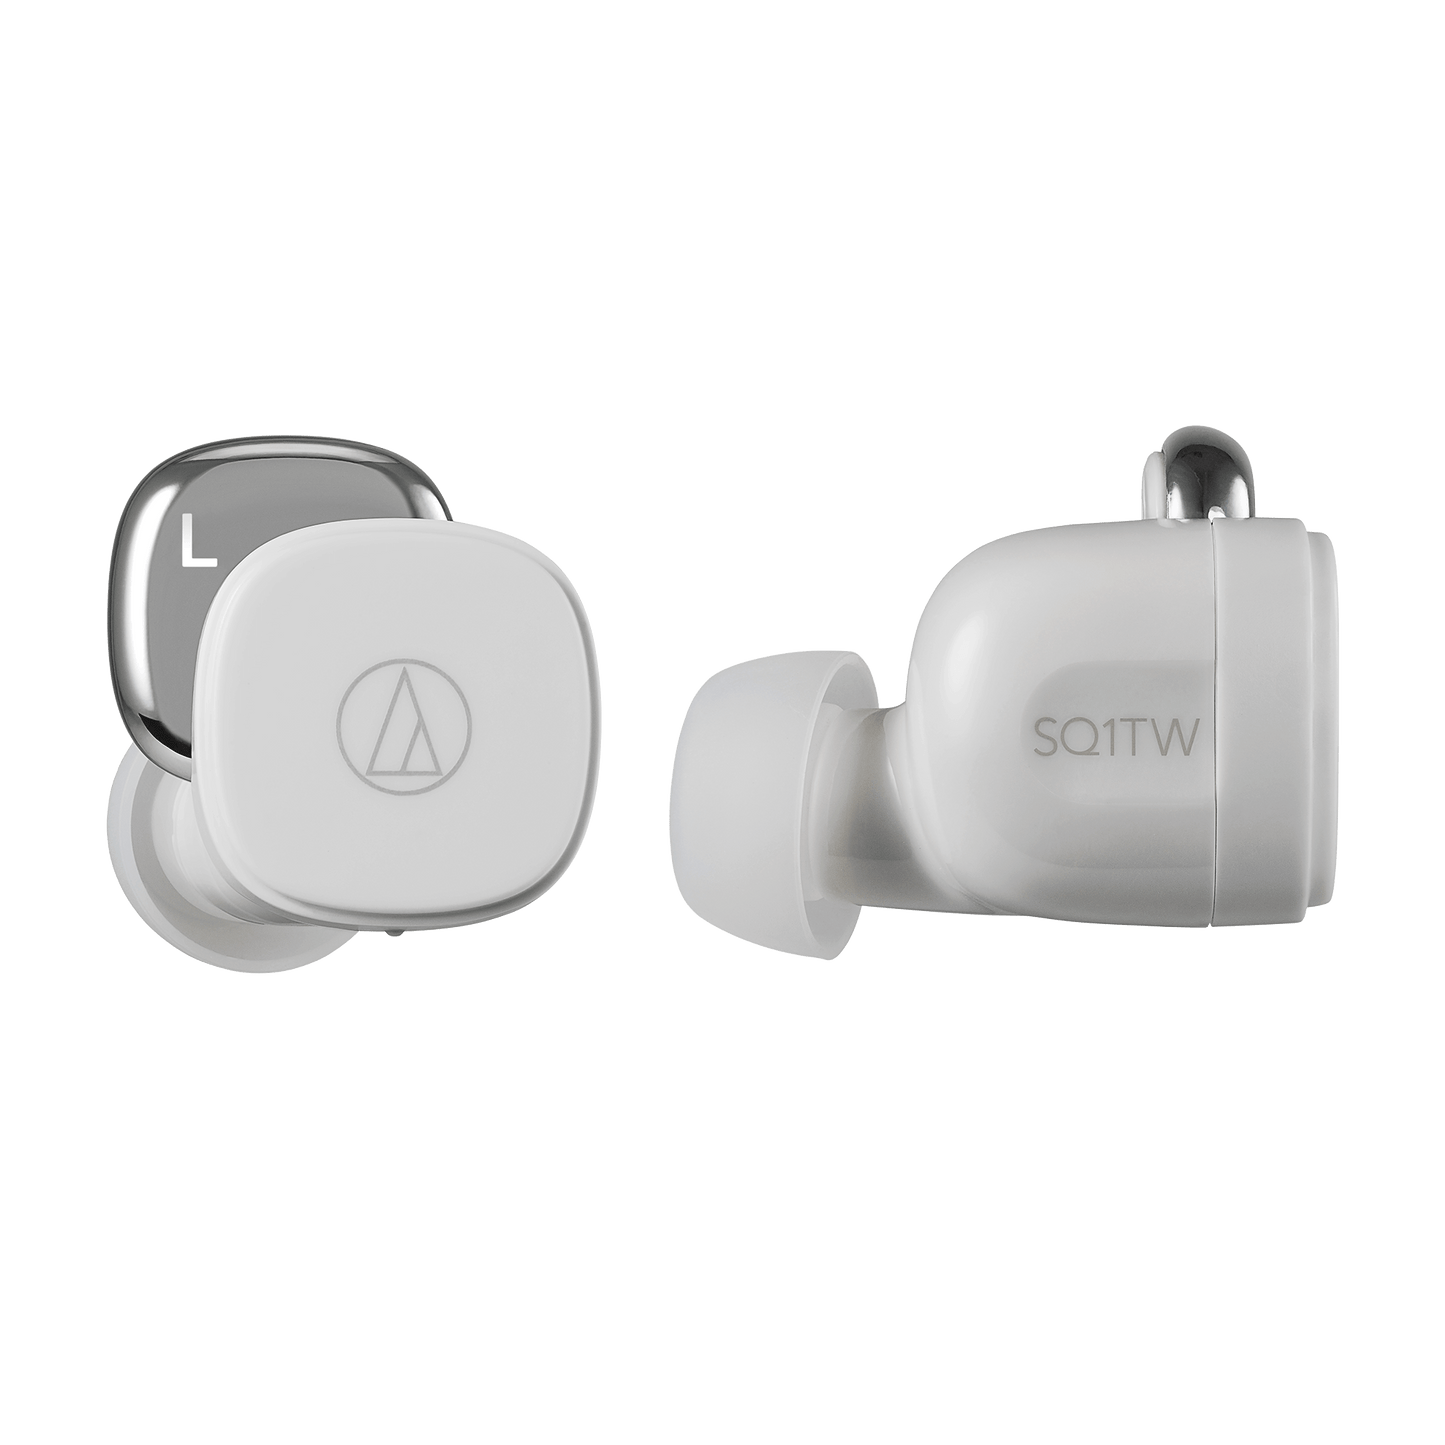 Audio-Technica ATH-SQ1TW Wireless Headphones - Popcorn